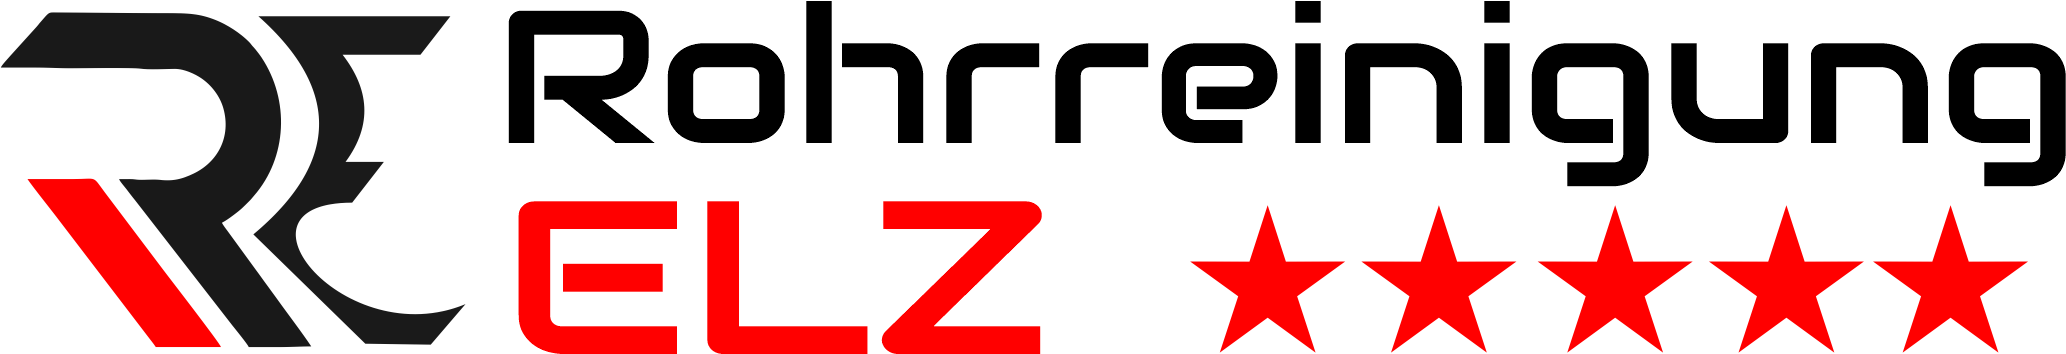 Rohrreinigung Elz Logo